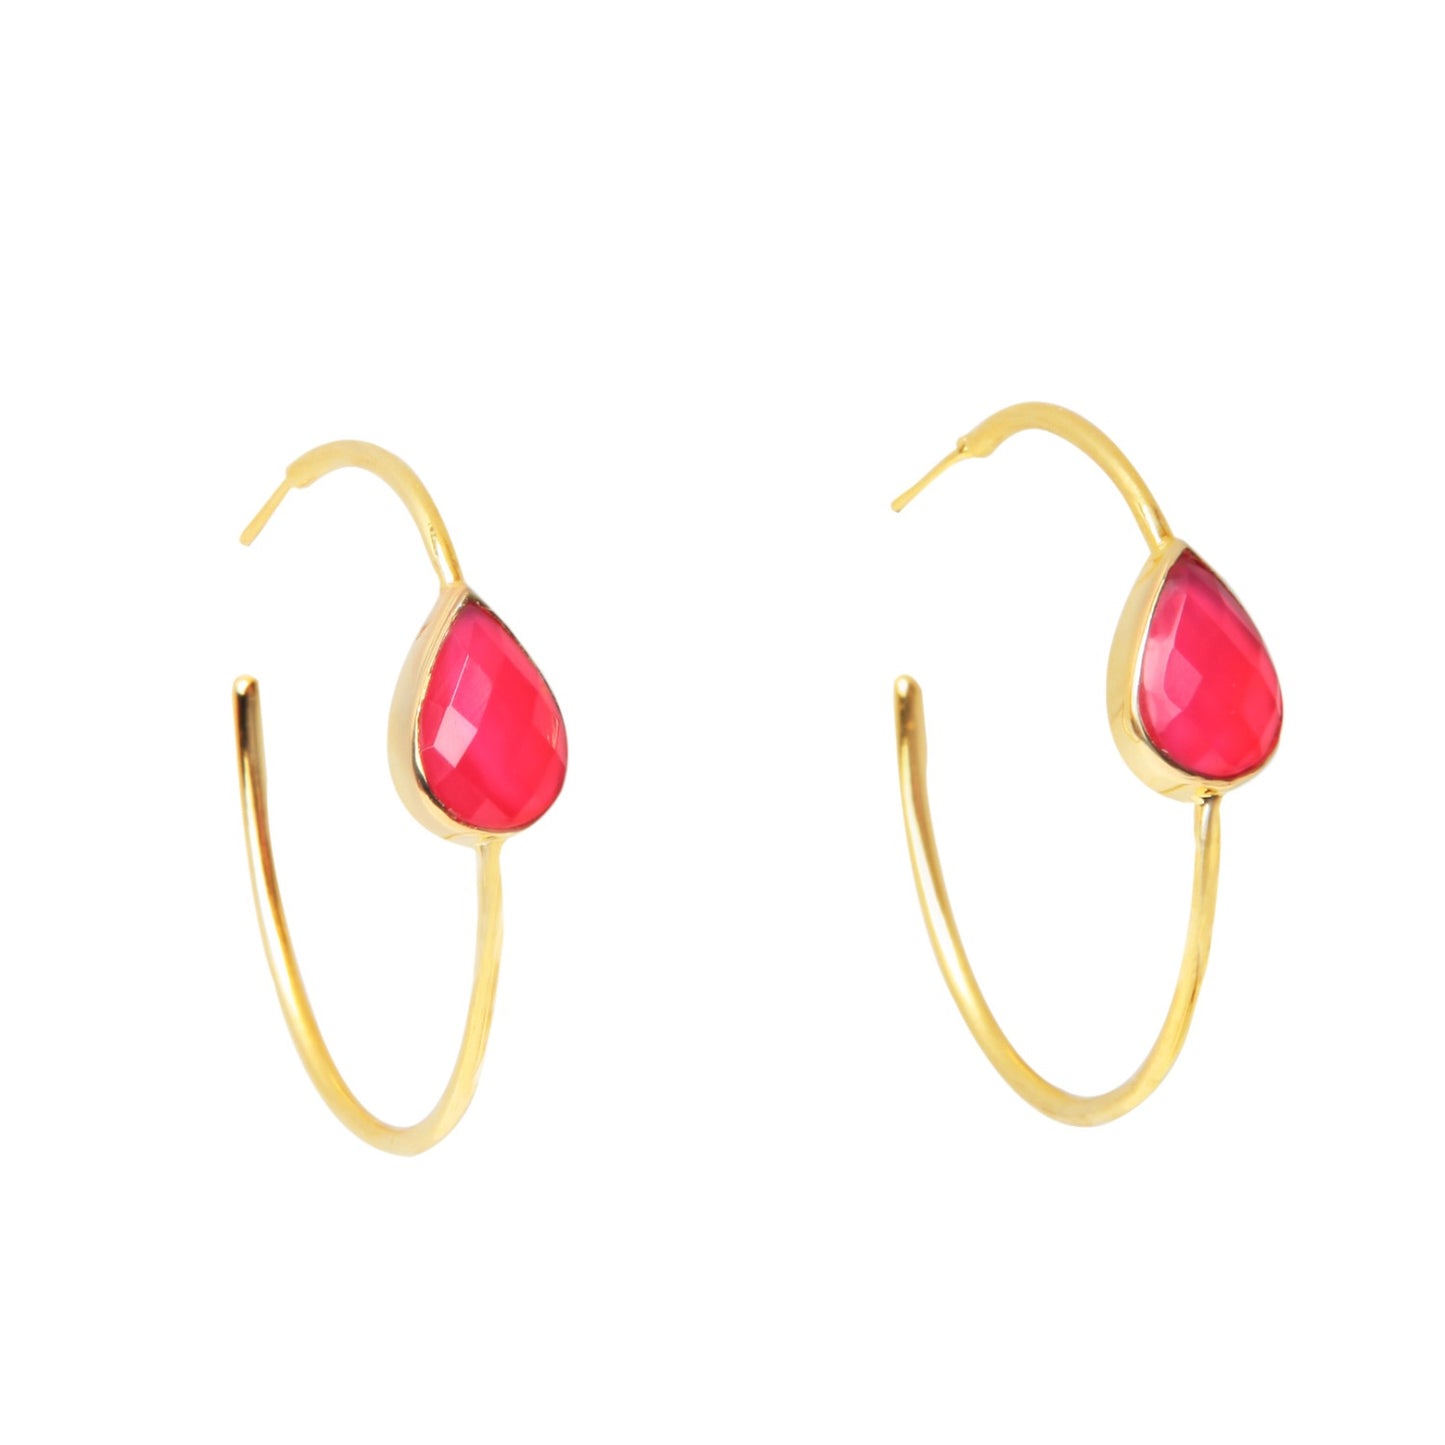 Gold Hoop Earrings with Semi-Precious Gem - YAAYAA London